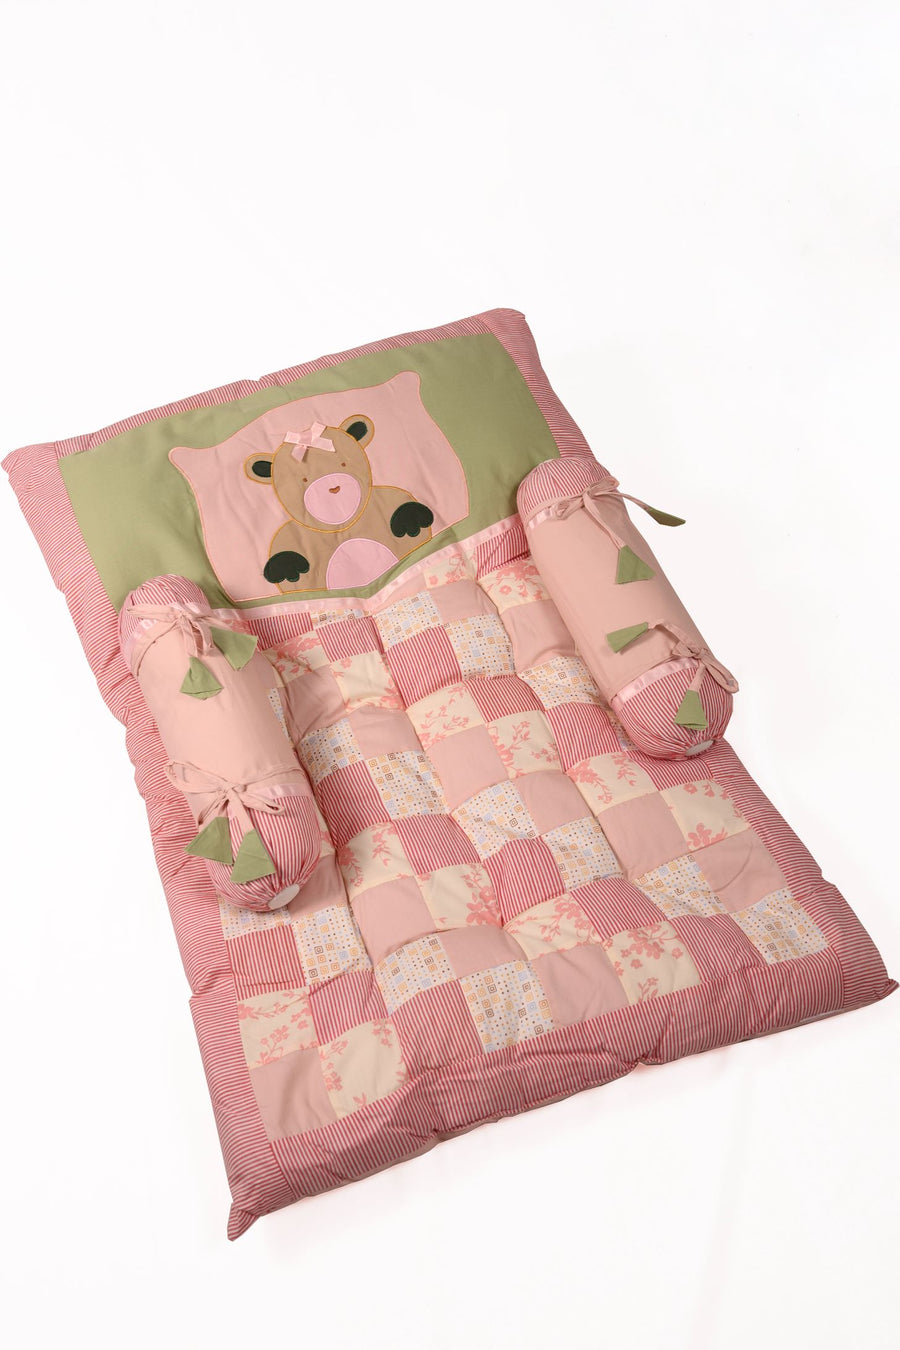 Pink Teddy Bear - Newborn Mattress Set